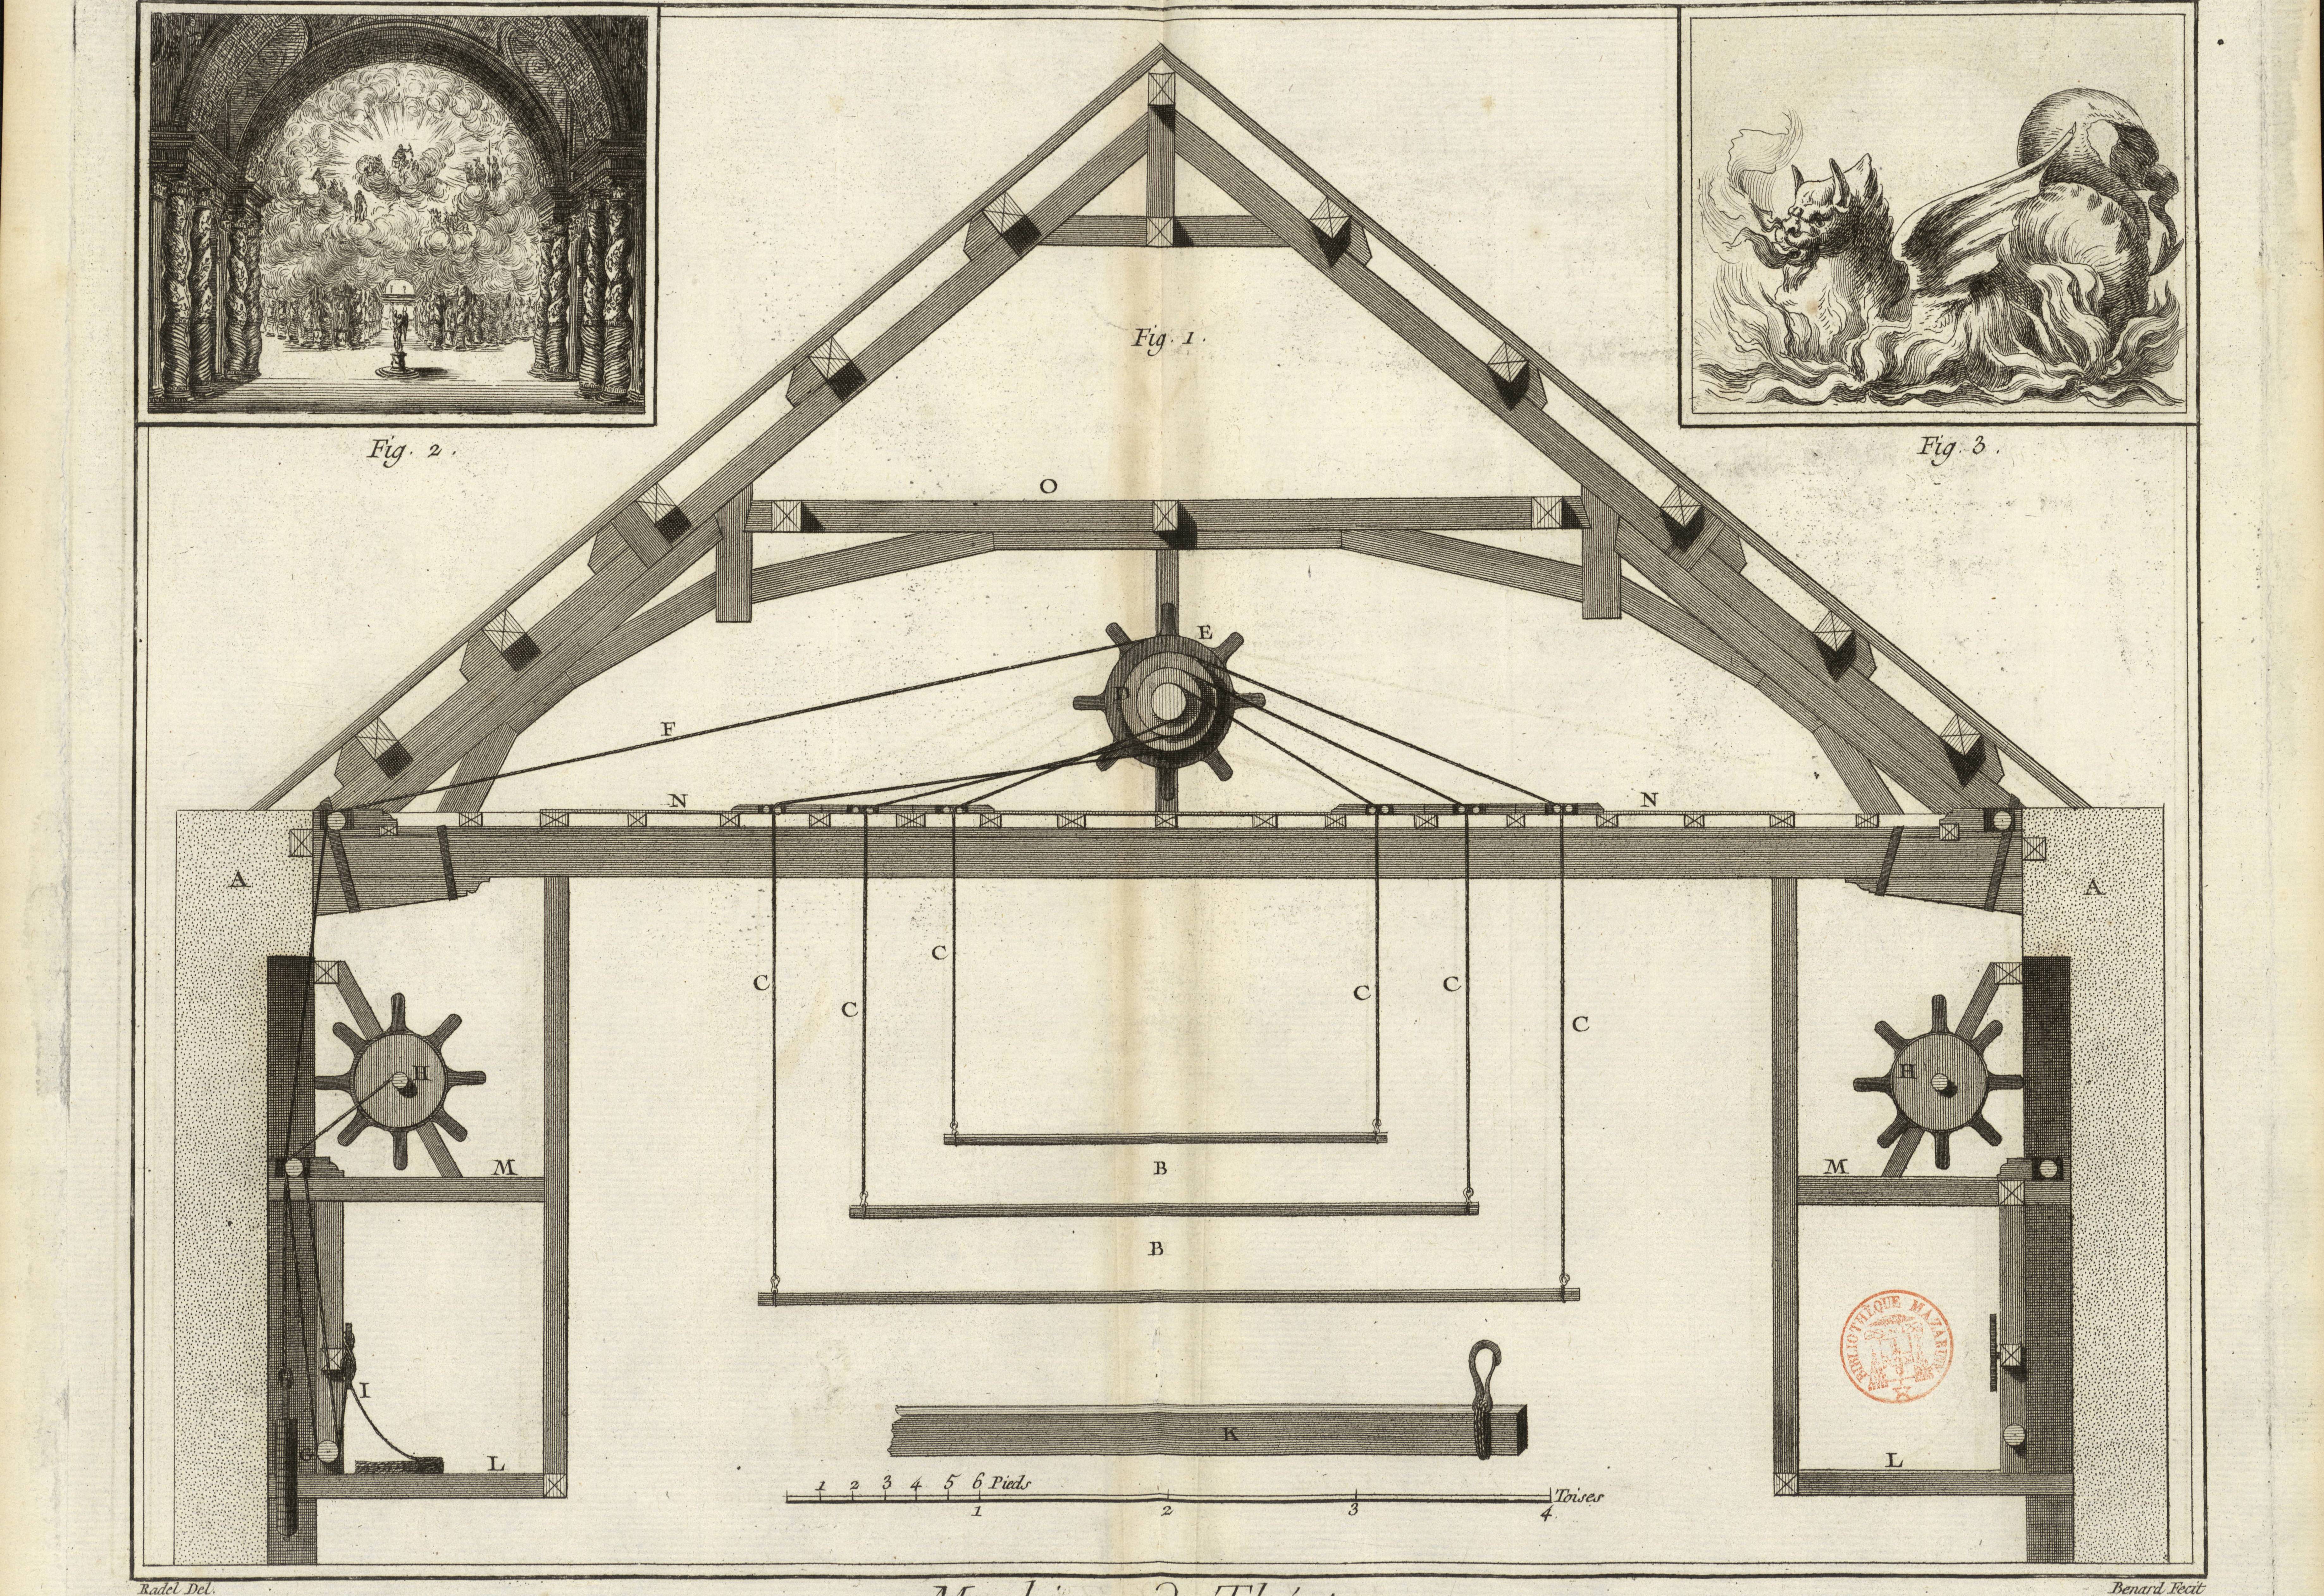 Encyclopédie ou Dictionnaire raisonné des sciences, des arts et des métiers, tome X des Planches (1772), pl. IX des Machines de théâtre